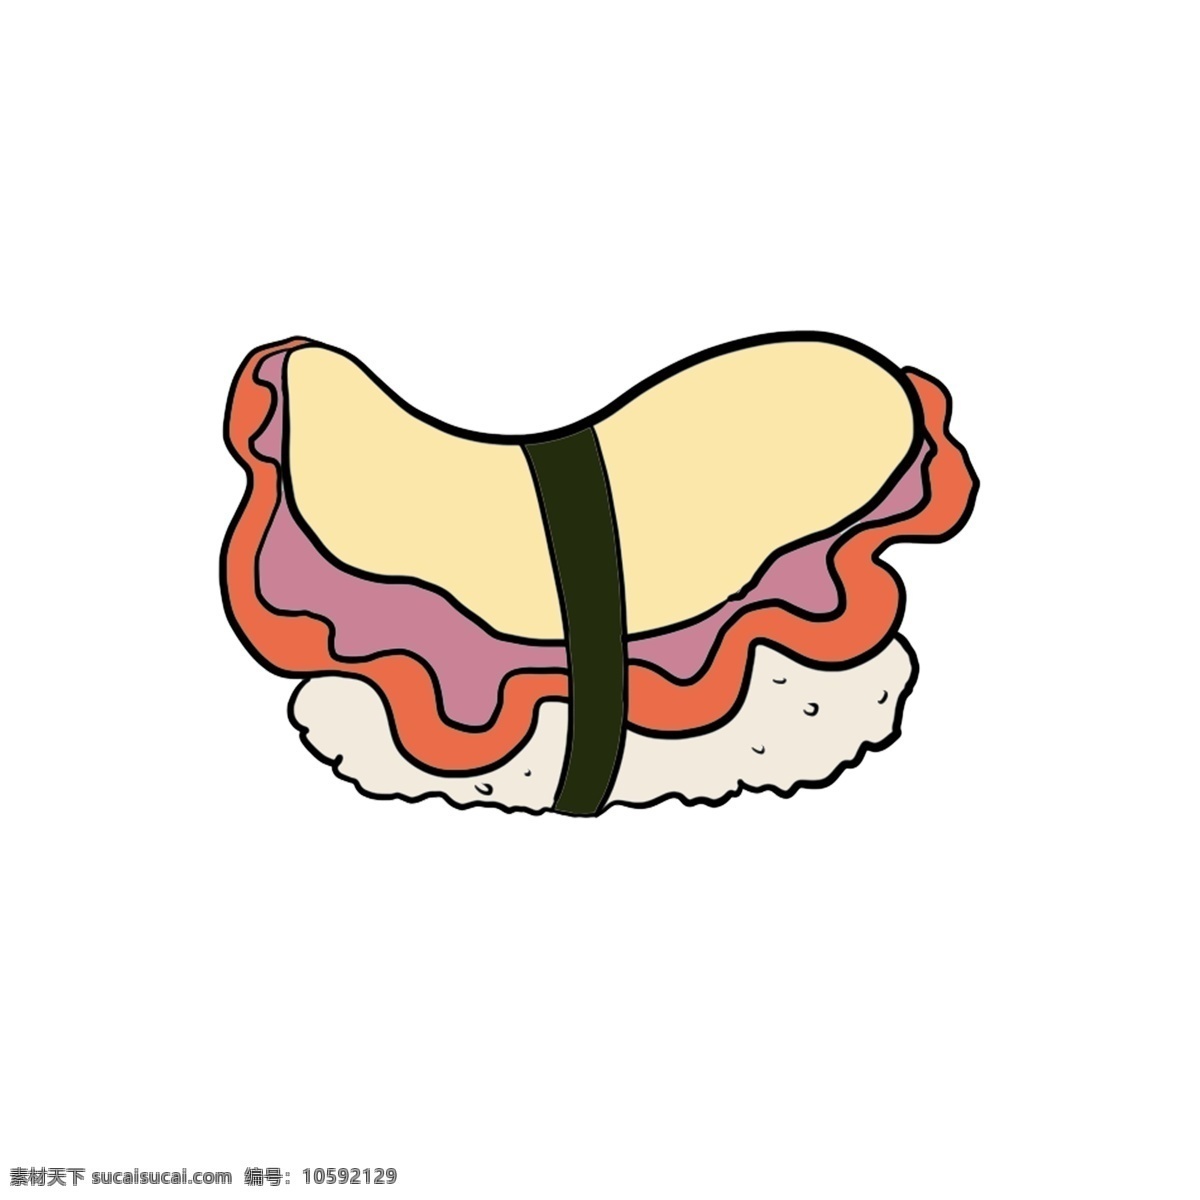 美味 三文鱼 寿司 小吃 寿司插图 美味的寿司 三文鱼寿司 日本美食 寿司插画 特色小吃 食物